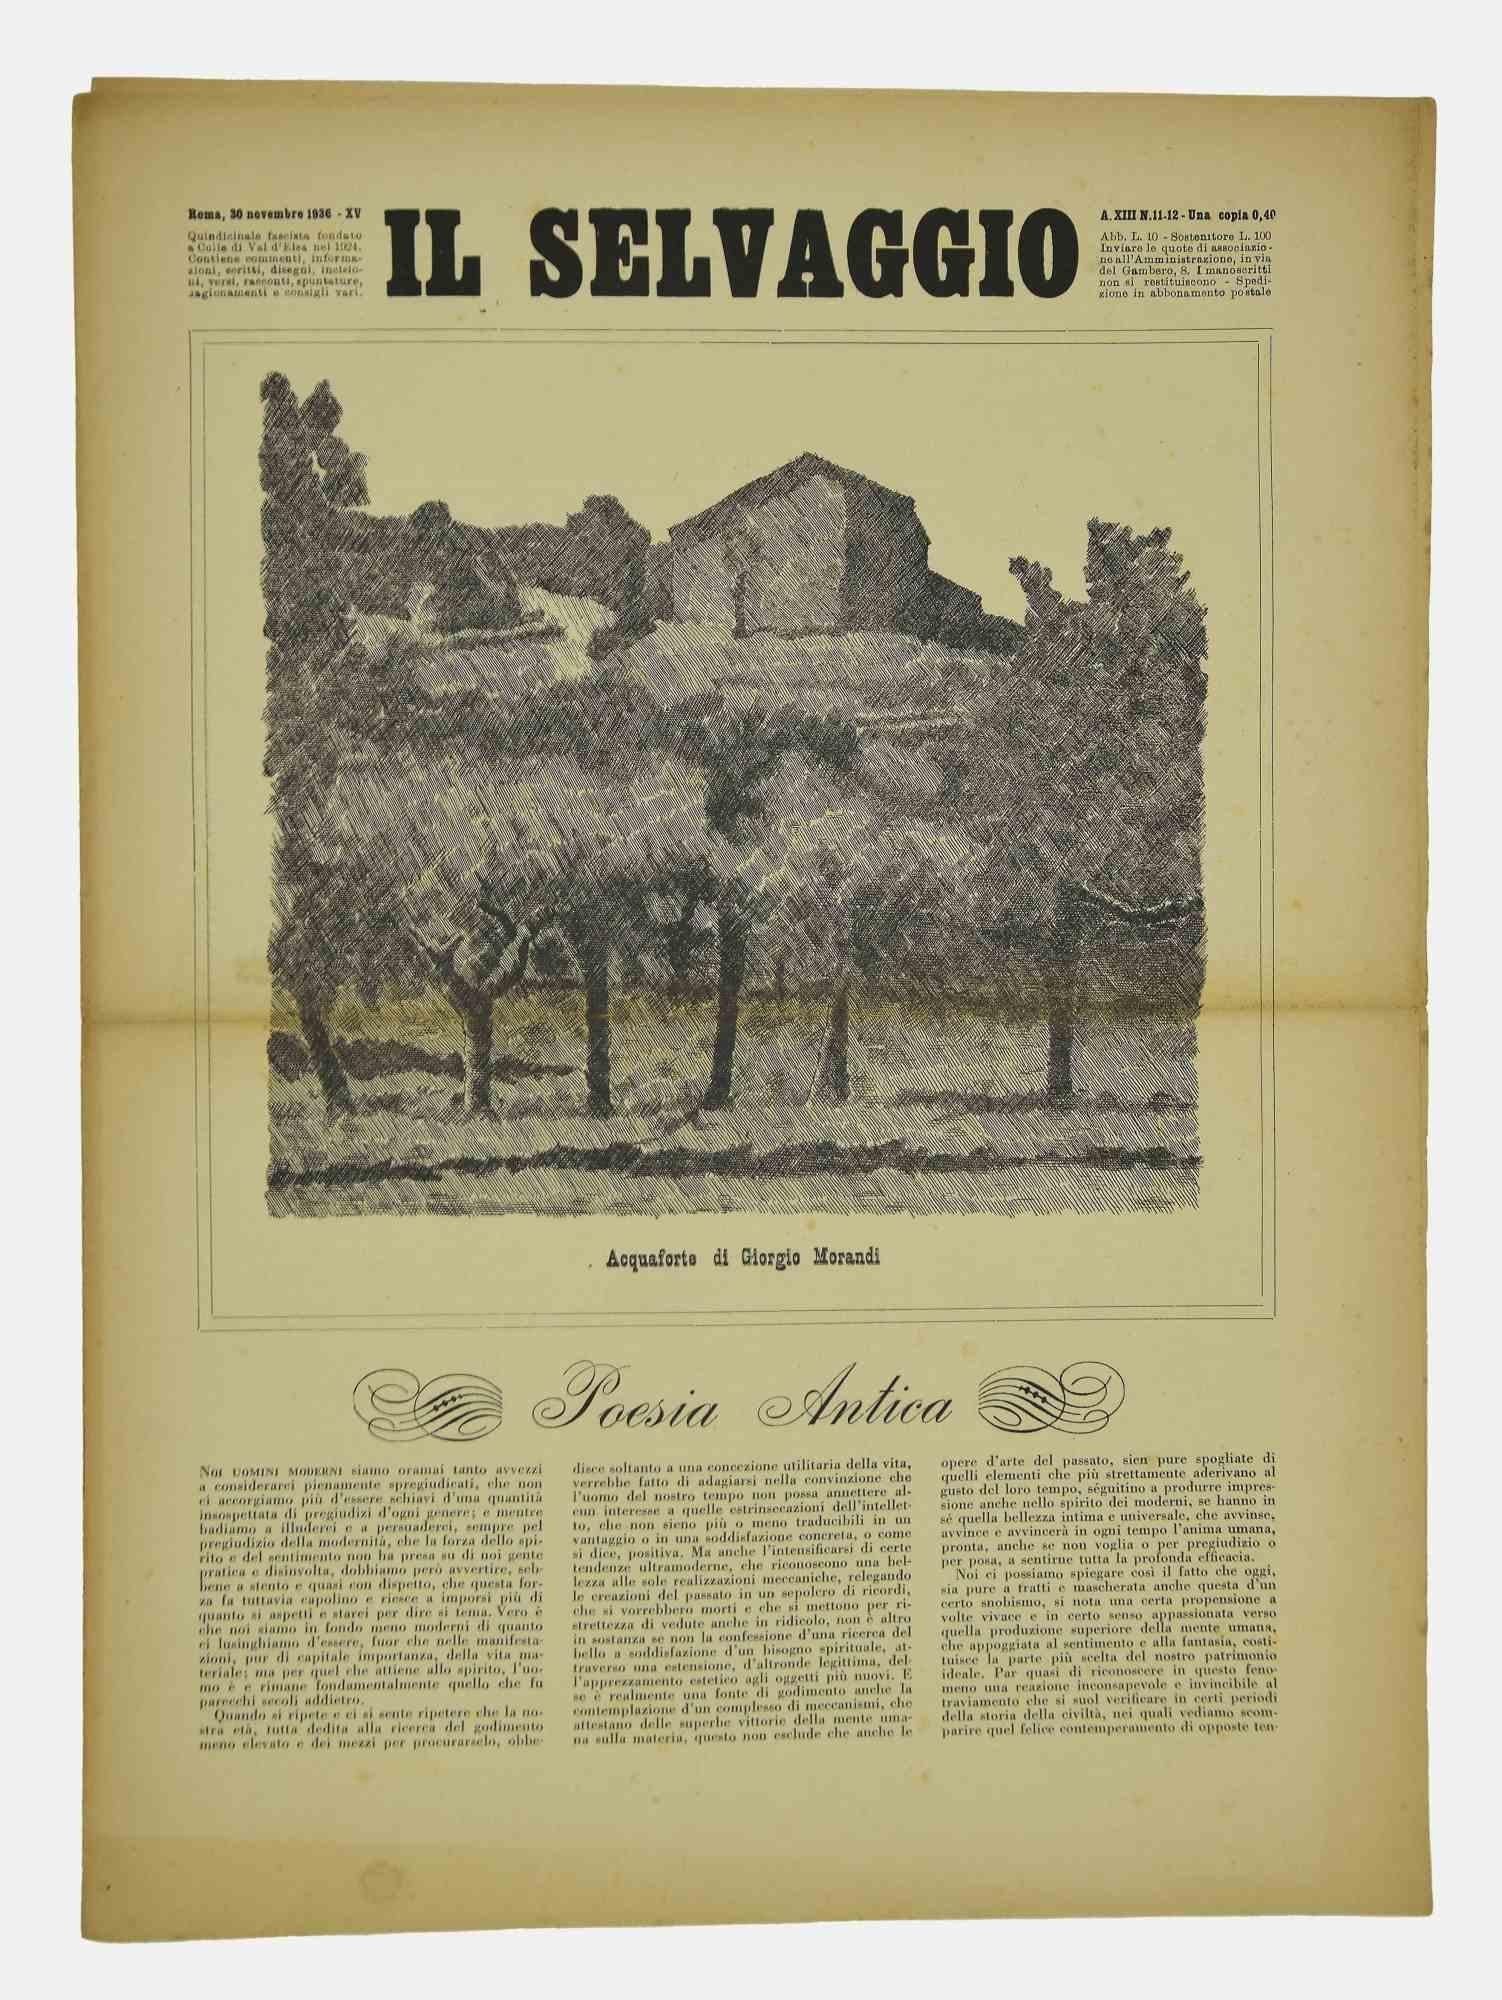 Feuilleter quelques pages de " Il Selvaggio, No.11-12, 1936 " 30 Novembre 1936-Anno-XV", "Abonnement annuel de soutien - Una copia 40 Cent - Journal bimensuel lettres arts et sciences".

Gravure de l'artiste Mino Maccari

Bonnes conditions.

 